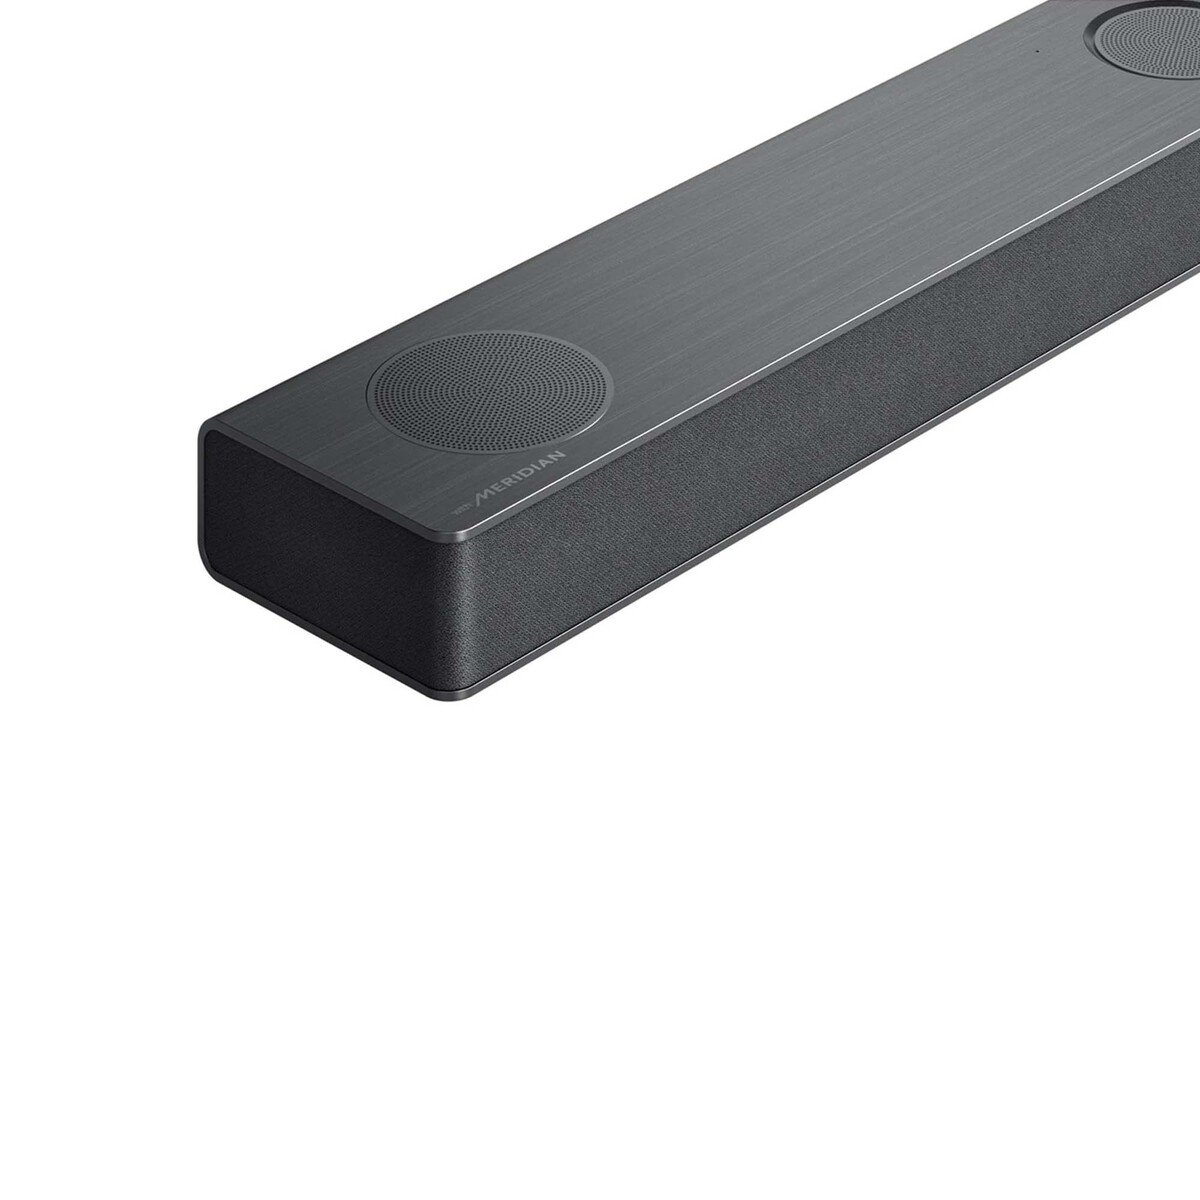 LG 5.1.3 ch Sound Bar with Dolby Atmos, 620 W, Black, S80QR